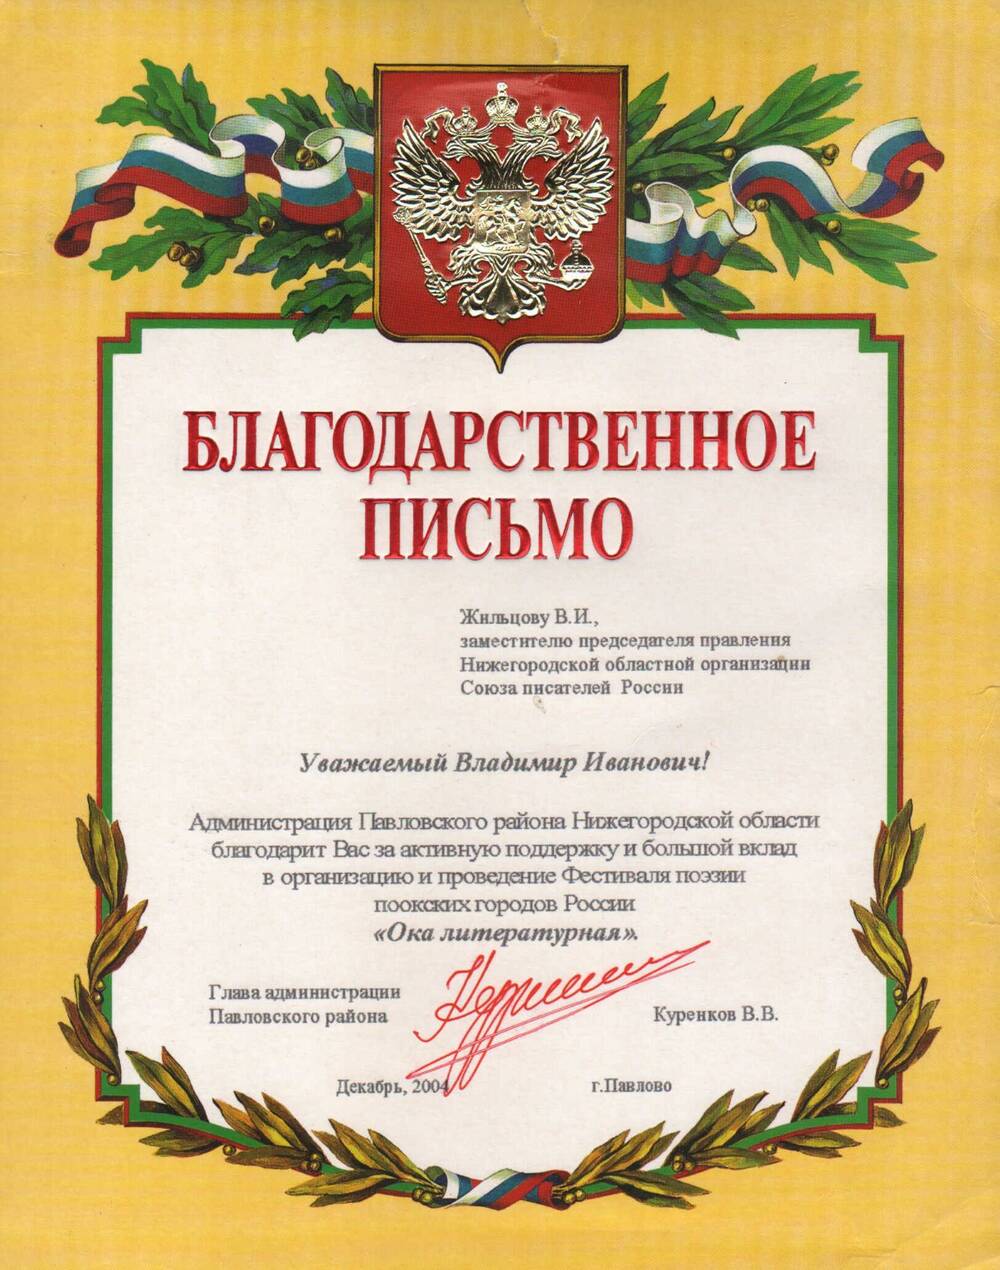 Благодарственное письмо Жильцова В.И. 2004 г.